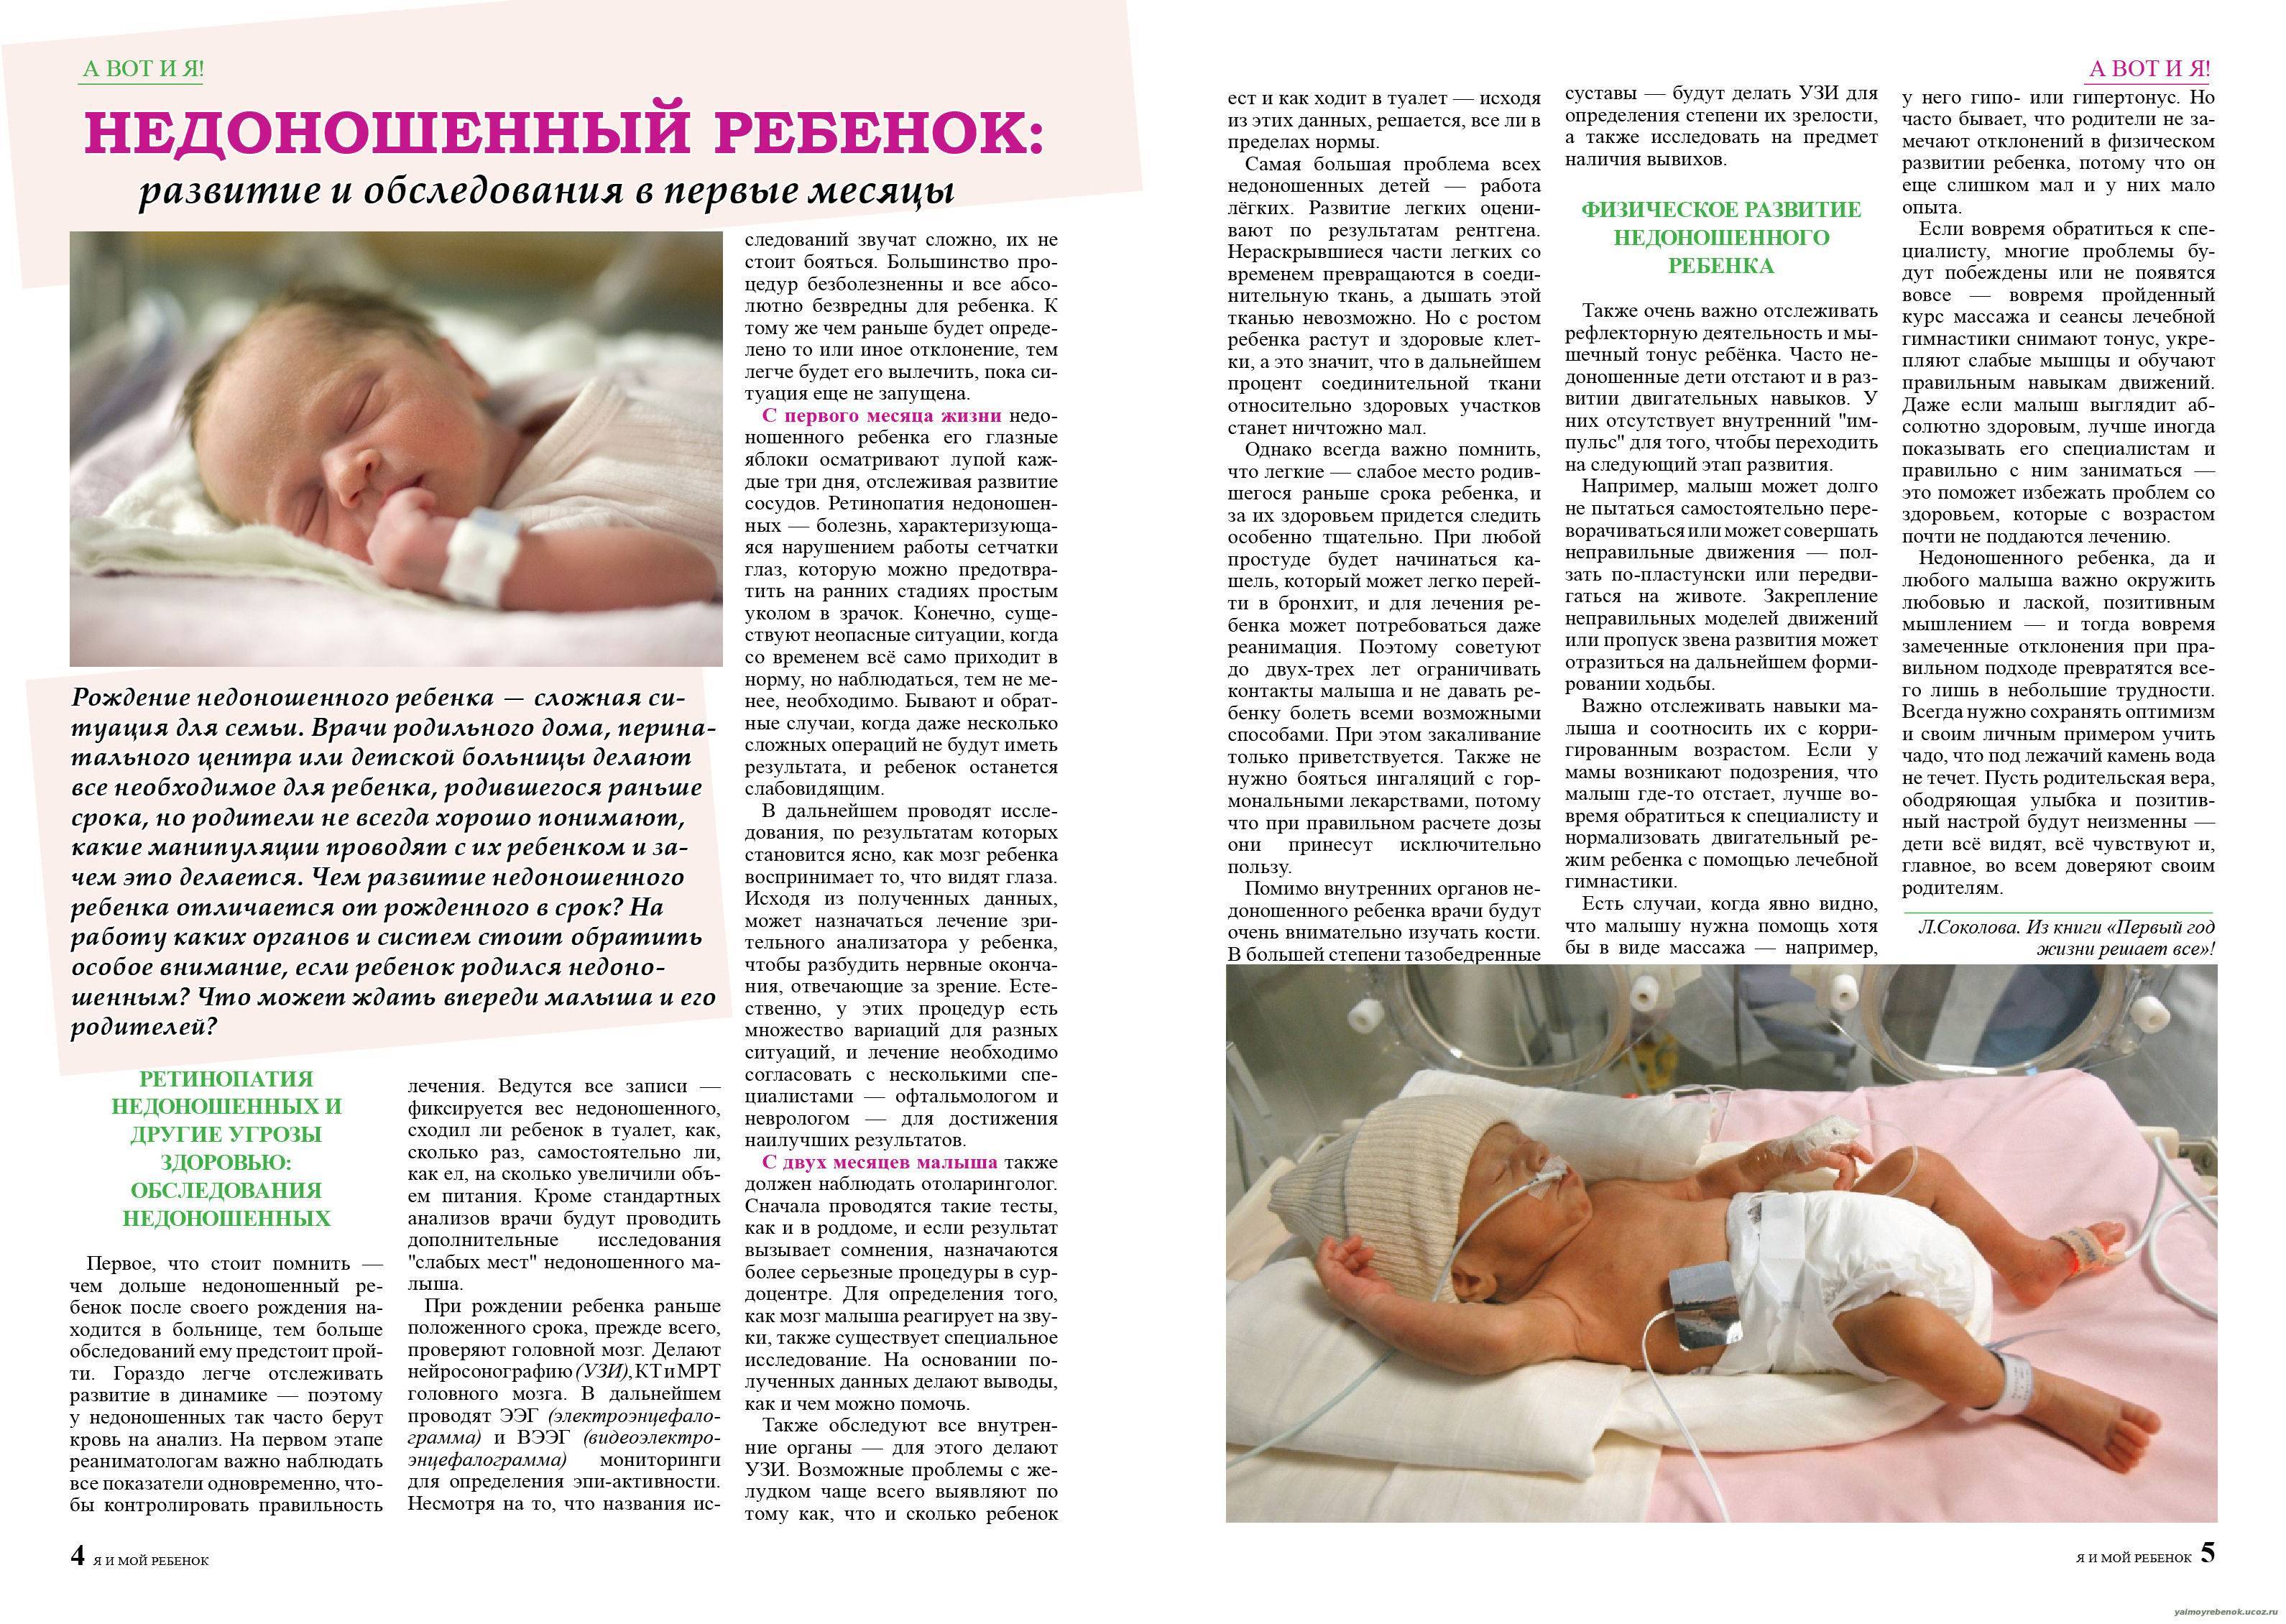 Недоношенные дети: особенности развития и ухода / mama66.ru